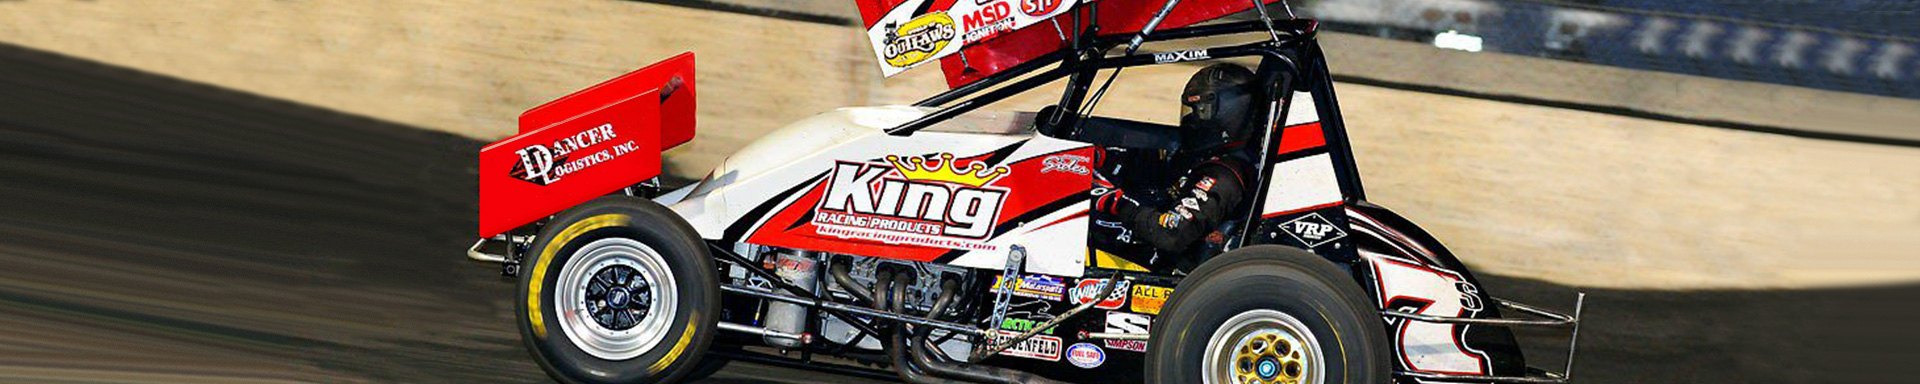 King Racing Exhaust